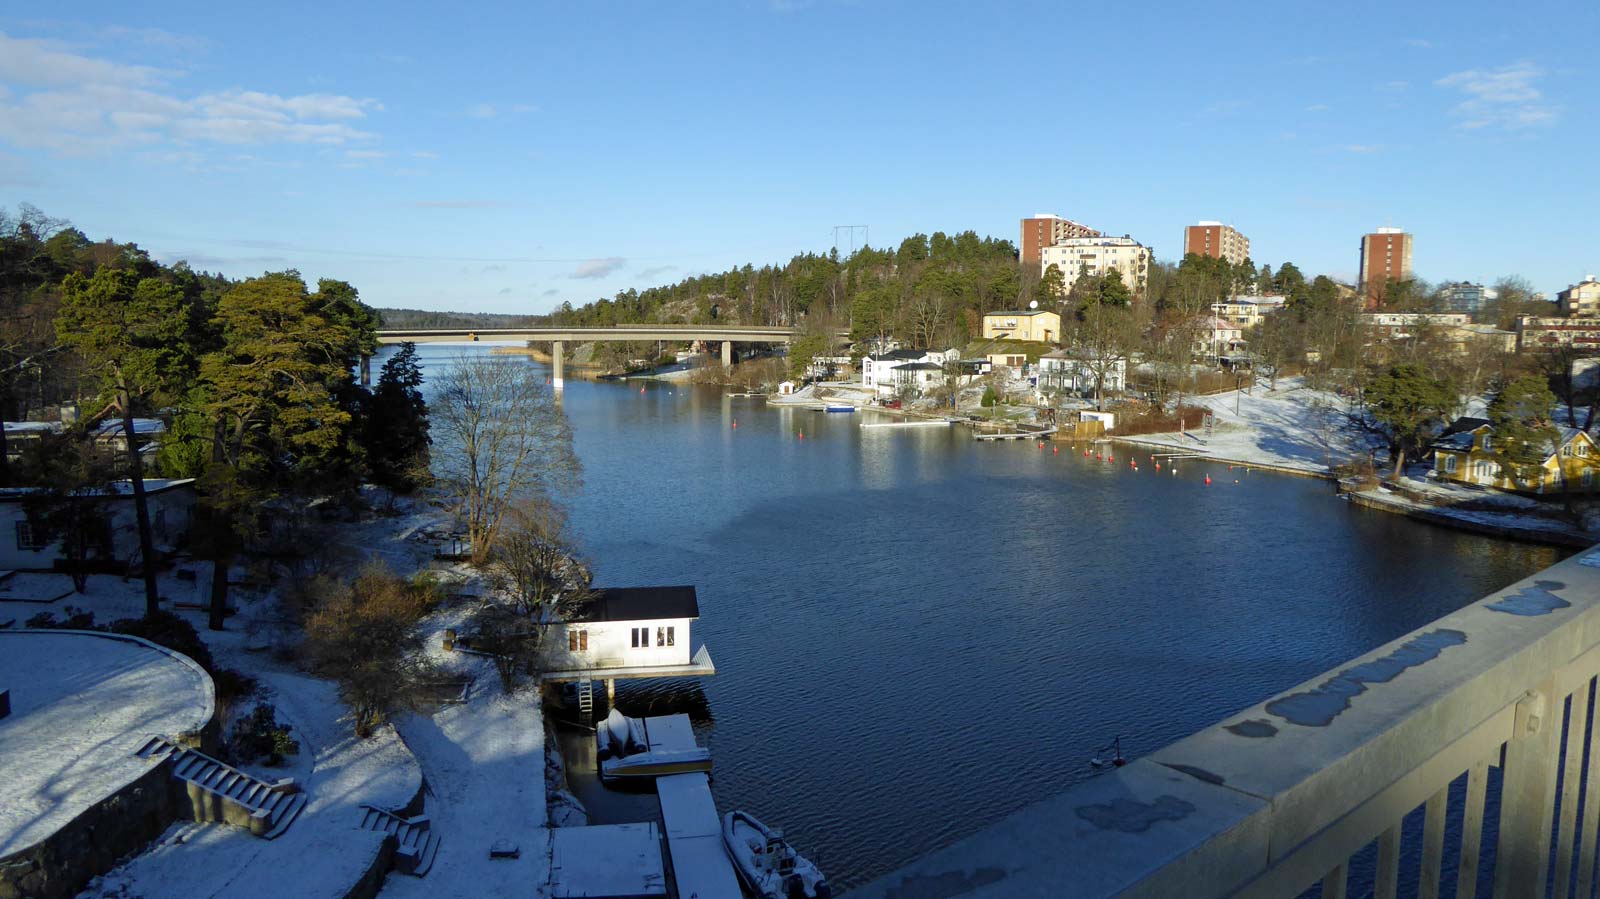 Passage av Edsvikens utlopp via Stocksundsbron. Isen i utloppet har försvunnit, men längre bort är isen ännu bärig